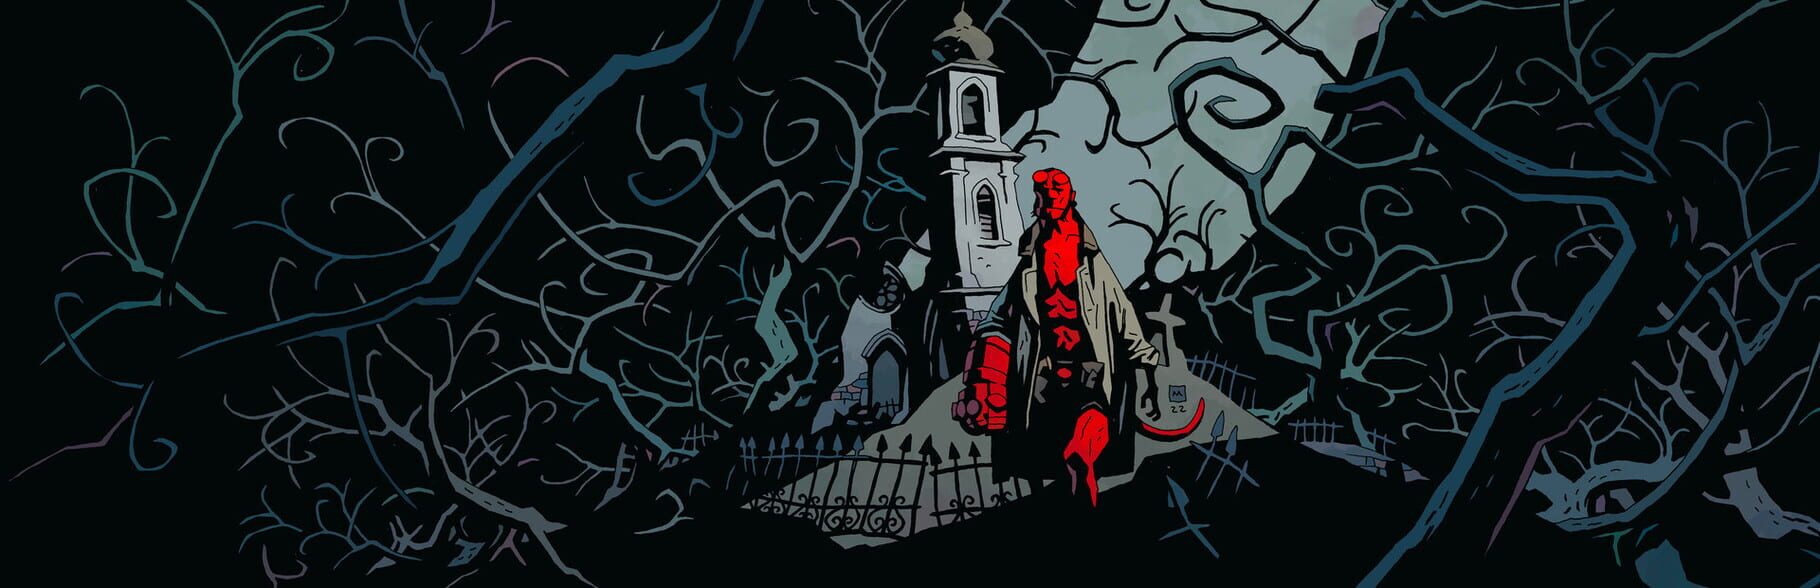 Hellboy: Web of Wyrd artwork